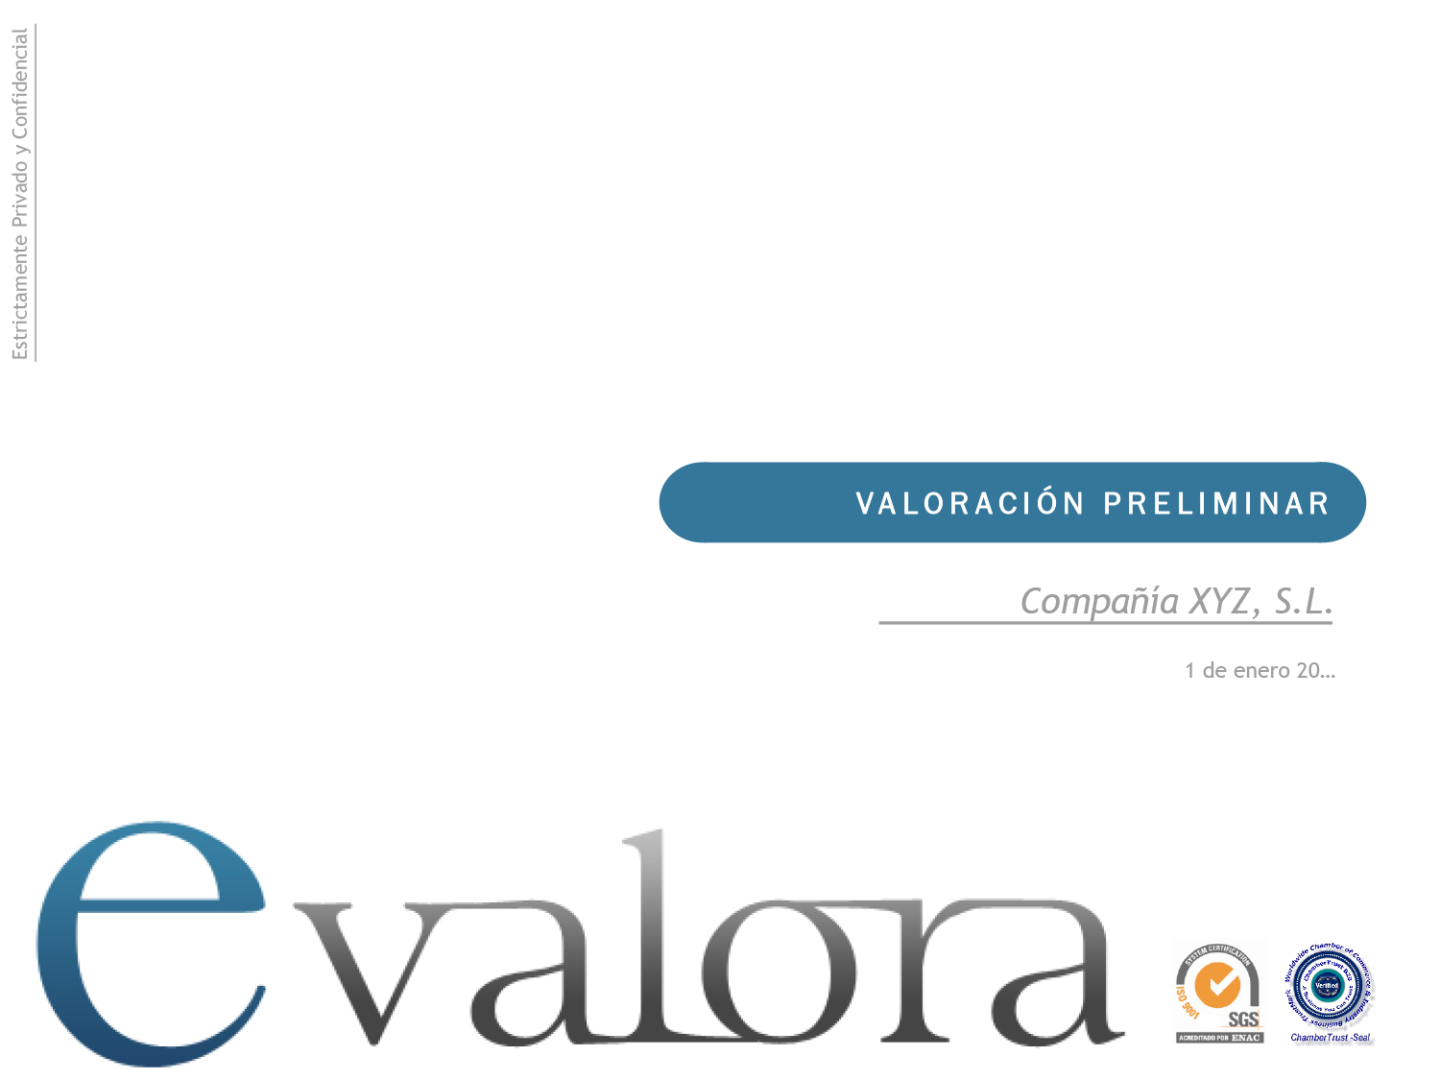 eValora-Ejemplo-Valoracion-Preliminar-page-001